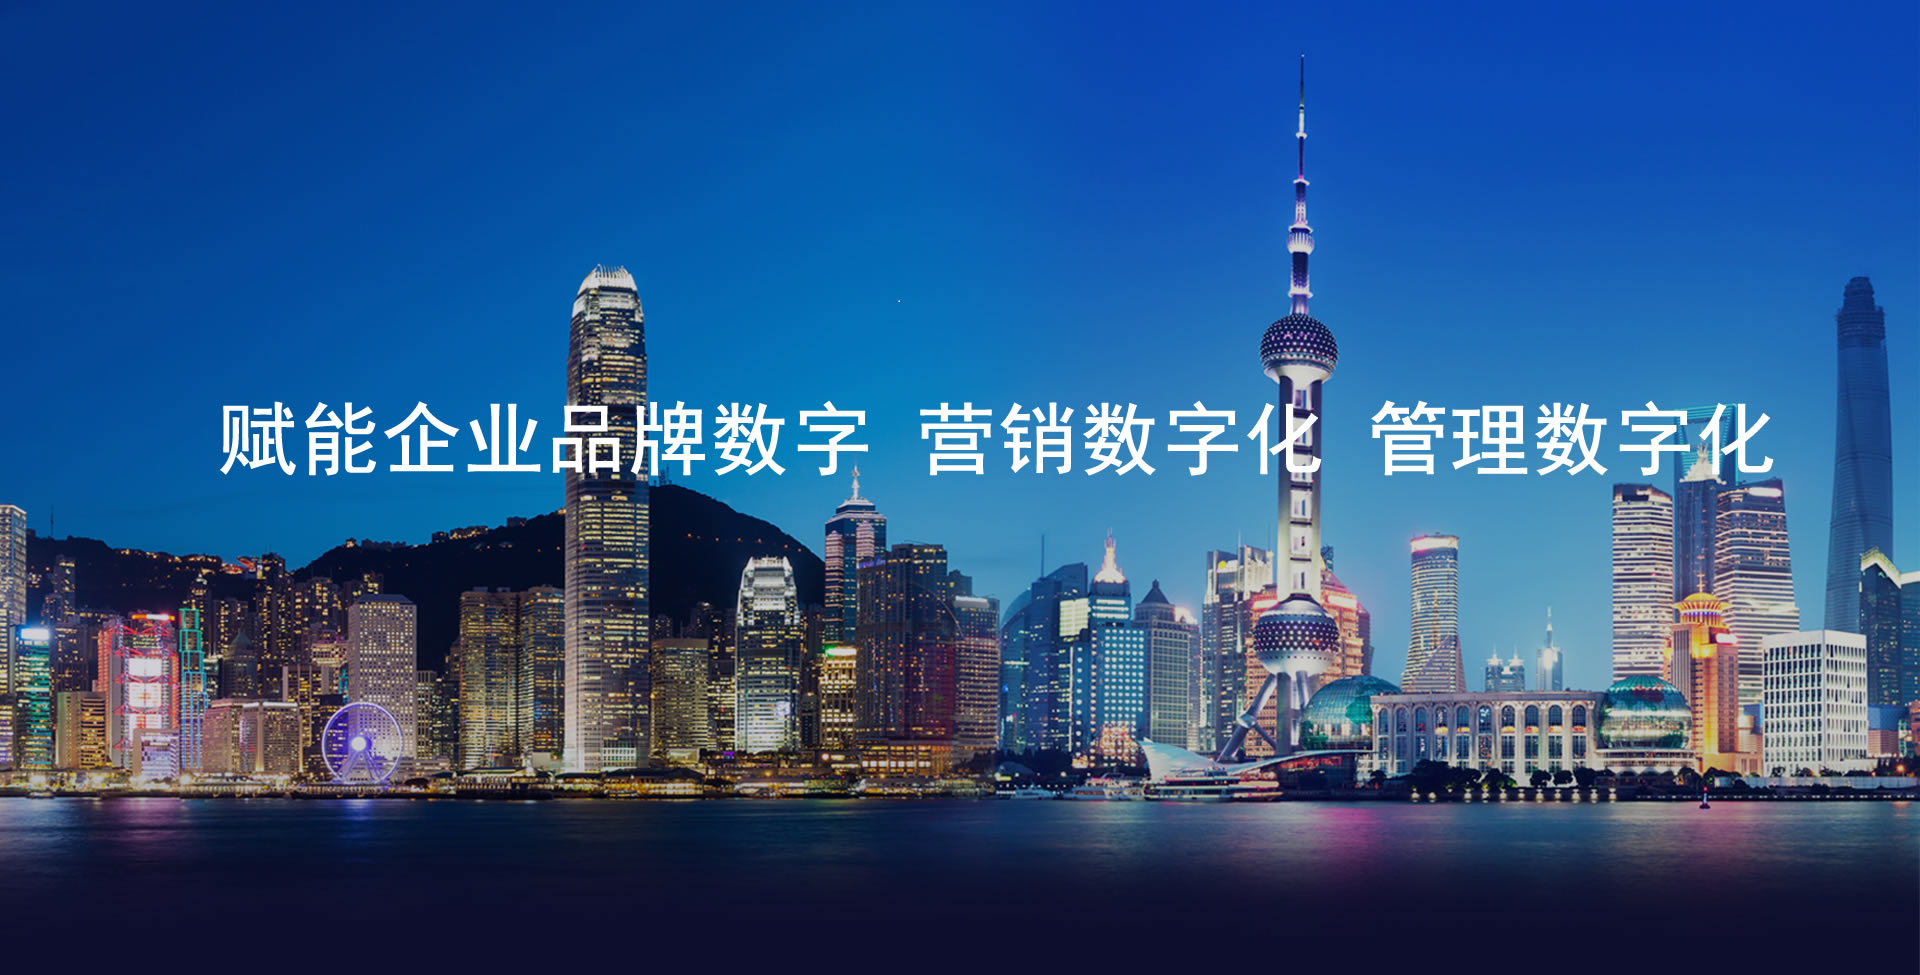 华南科技文化网 - 企业品牌数字化